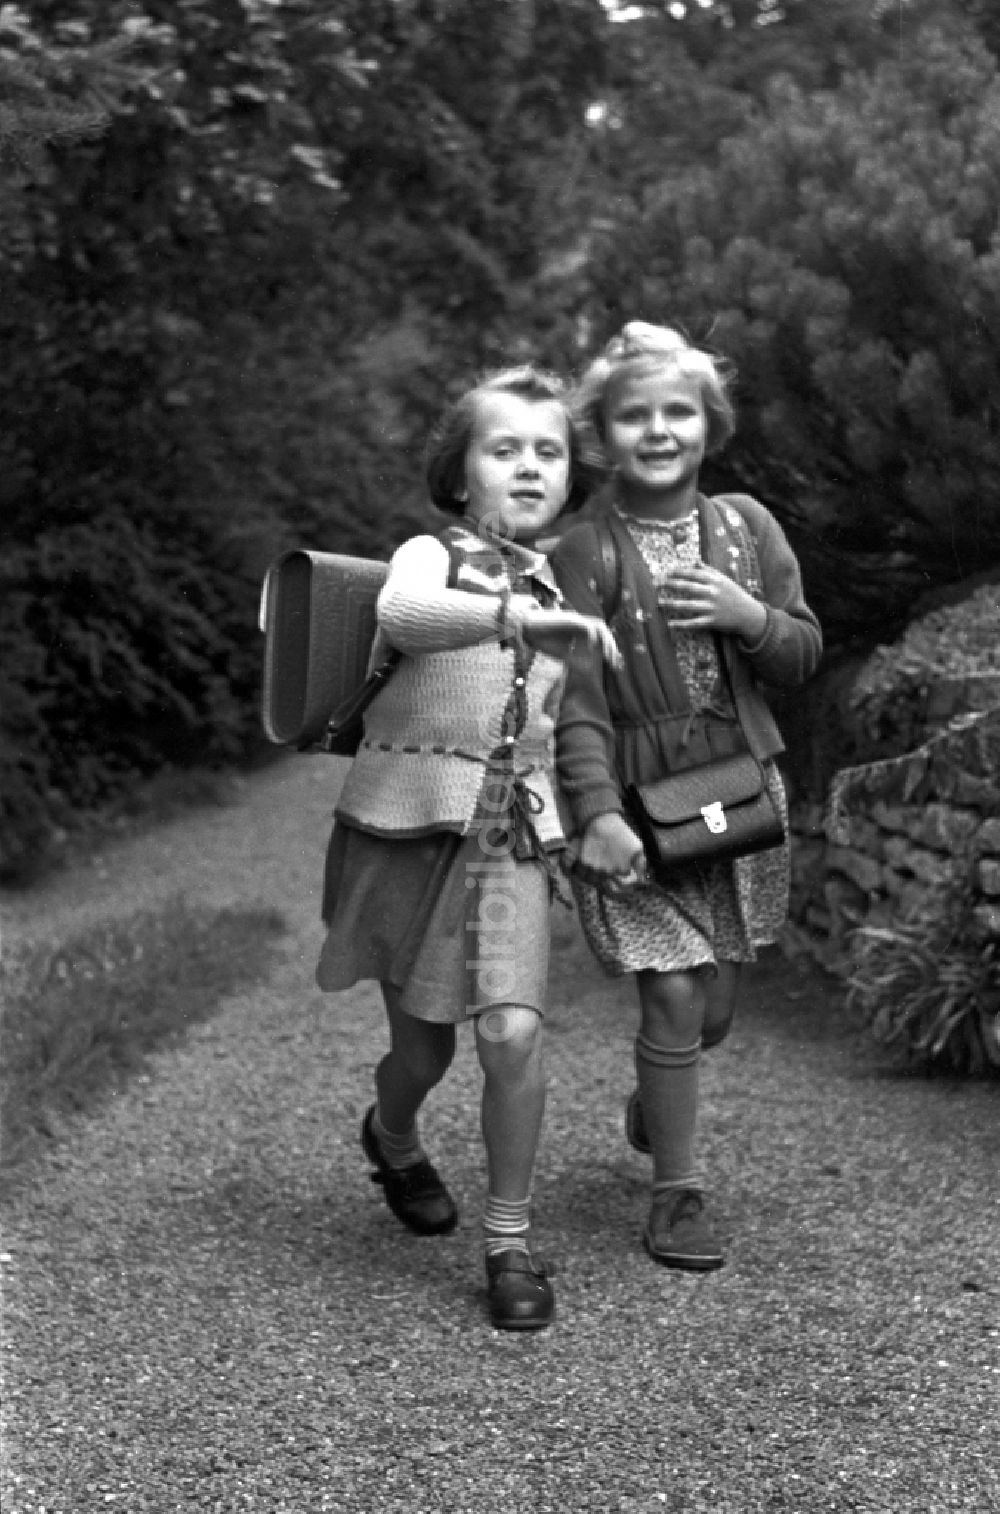 DDR-Bildarchiv: Dresden - Schulanfang für zwei junge Mädchen mit Schulranzen in Dresden in Sachsen auf dem Gebiet der ehemaligen DDR